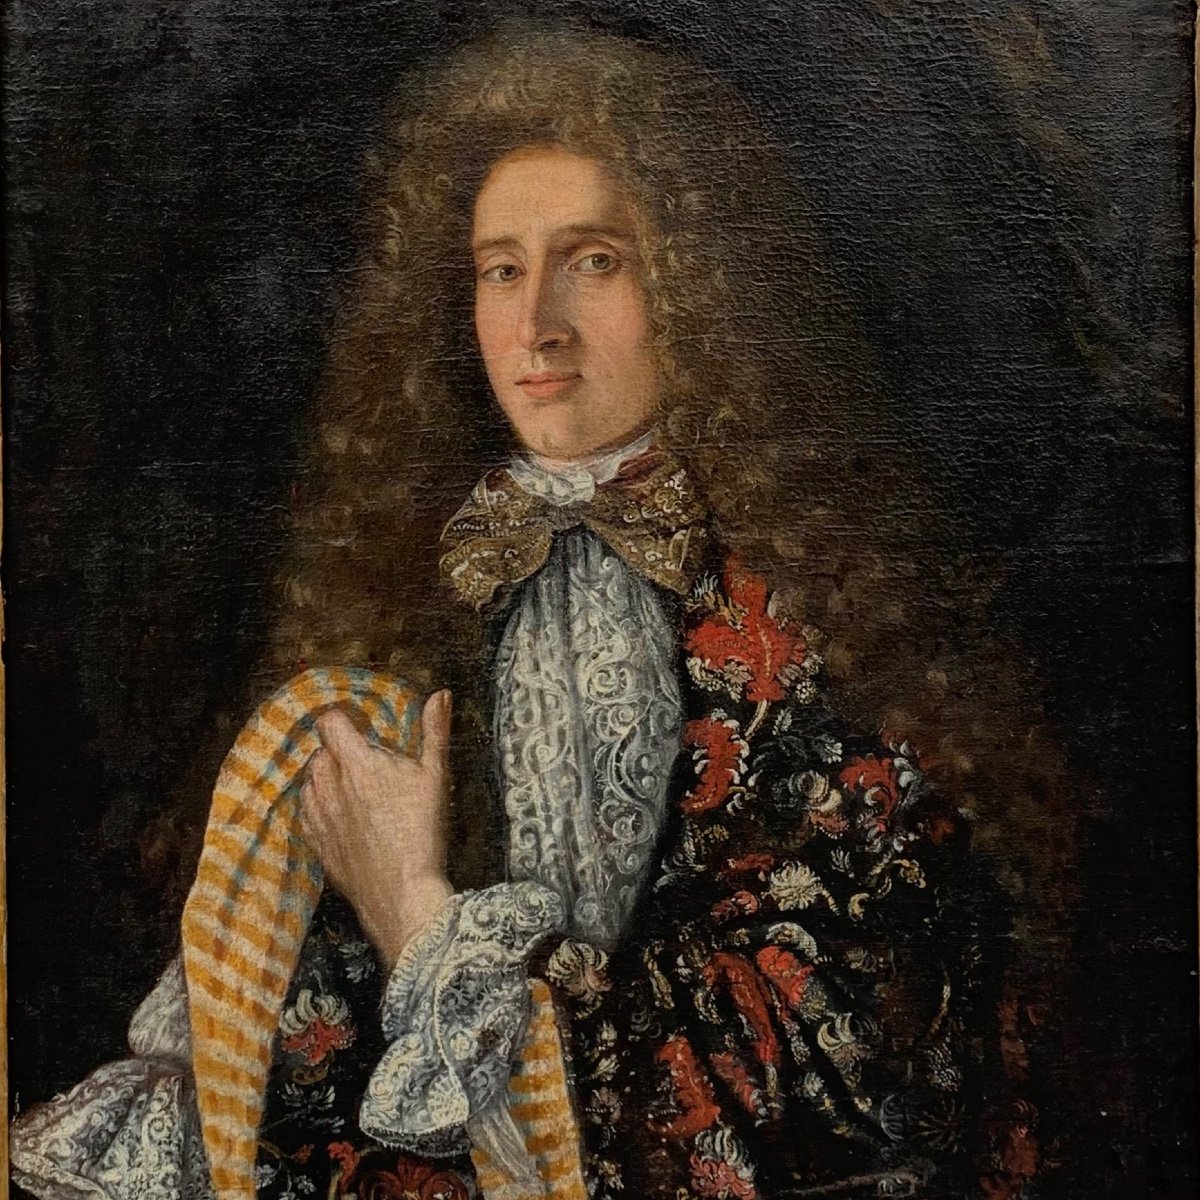 Portrait Of A Man, Around 1700